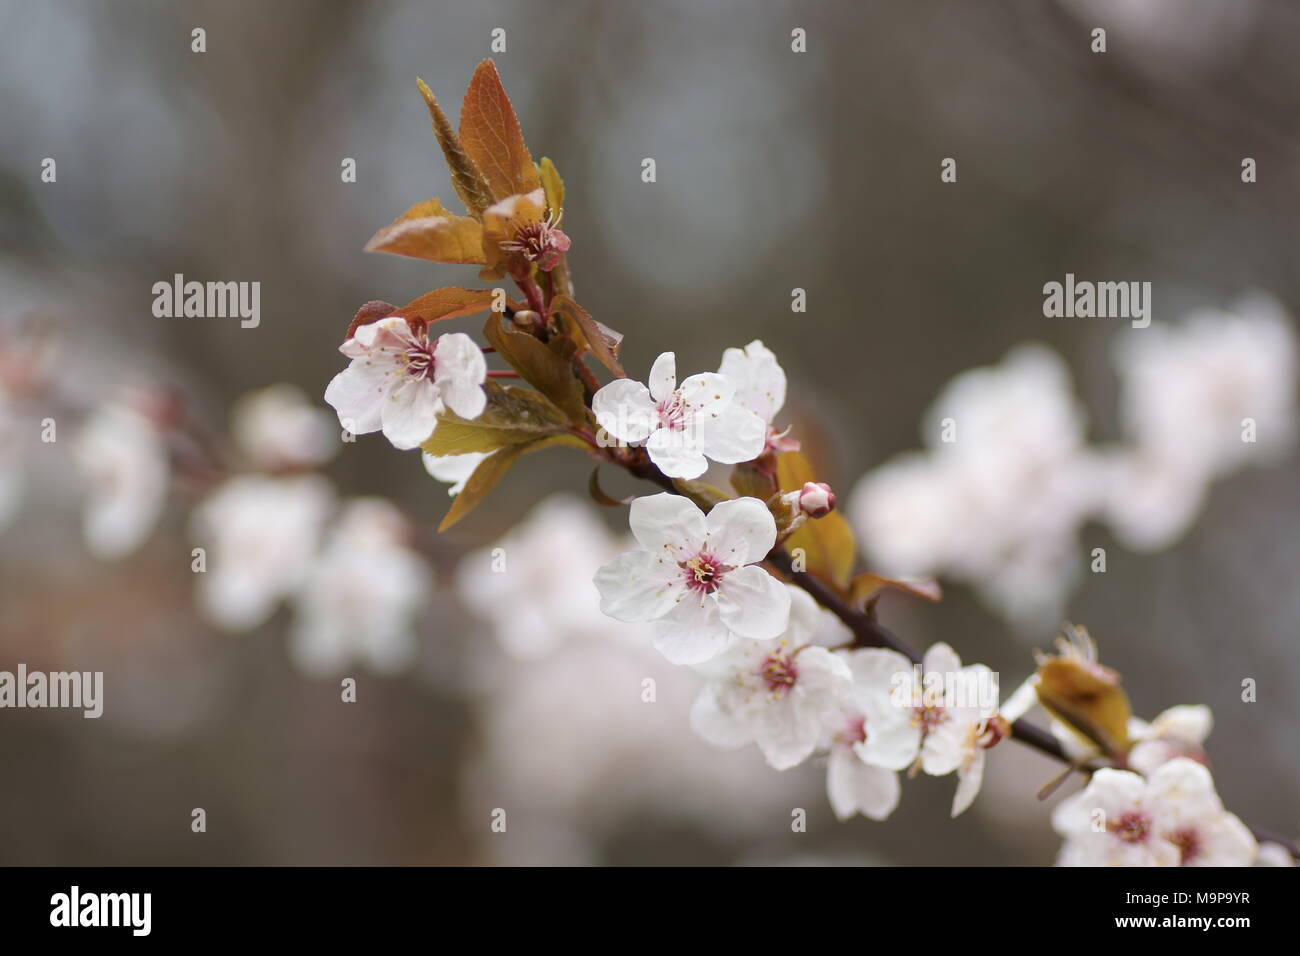 Blumen von Prunus cerasifera Pissardii an Clyne Gärten, Swansea, Wales, UK. Stockfoto